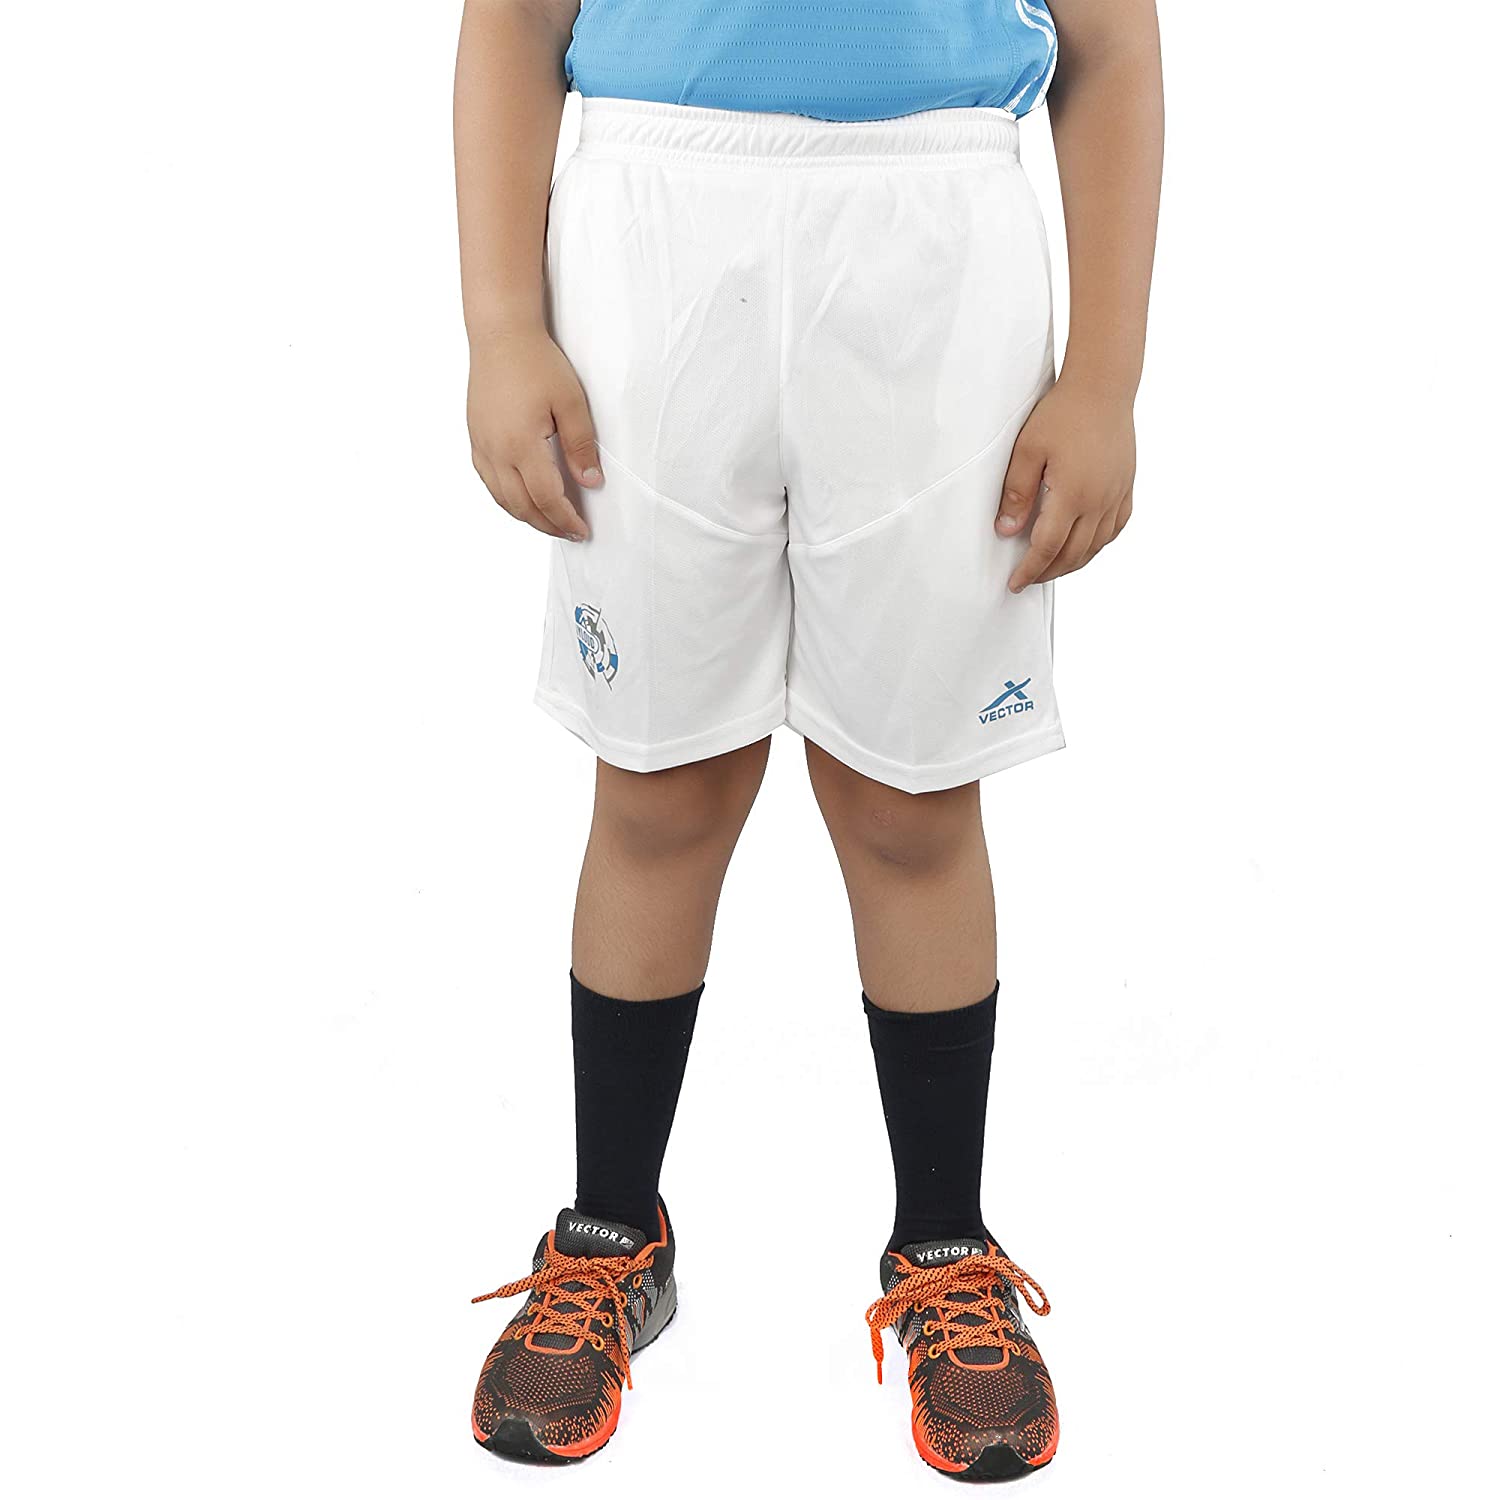 Vector X VSK-005 Shorts for Kids , White - Best Price online Prokicksports.com